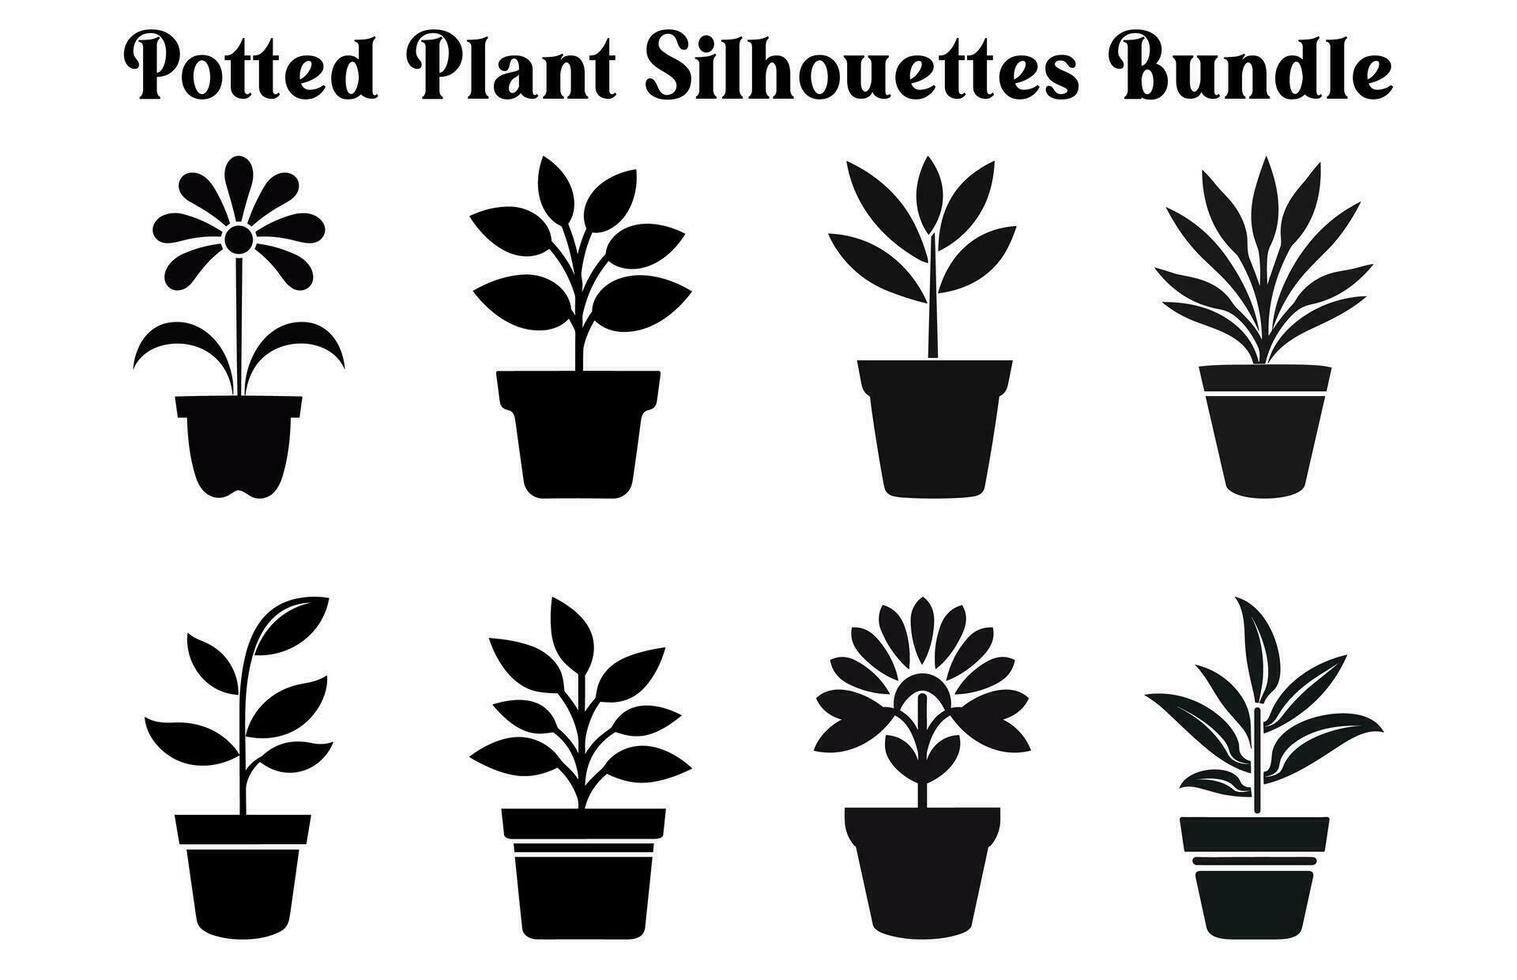 gratis vector en conserva plantas silueta colocar, negro y blanco en conserva Desierto planta clipart recopilación, interior planta en ollas